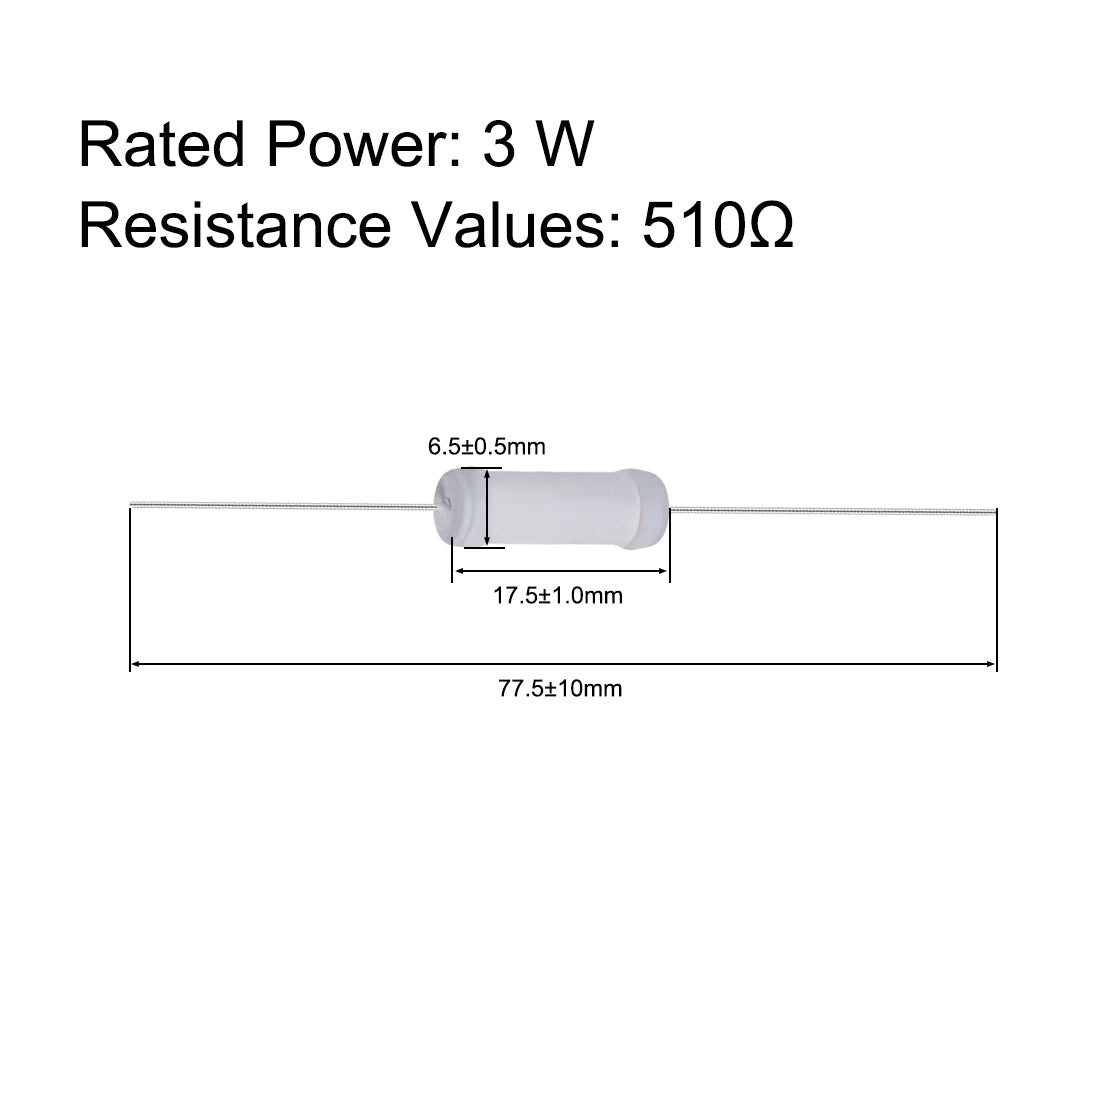 uxcell Uxcell 40pcs 3W 3 Watt Metal Oxide Film Resistor Lead 510 Ohm ±5% Tolerance